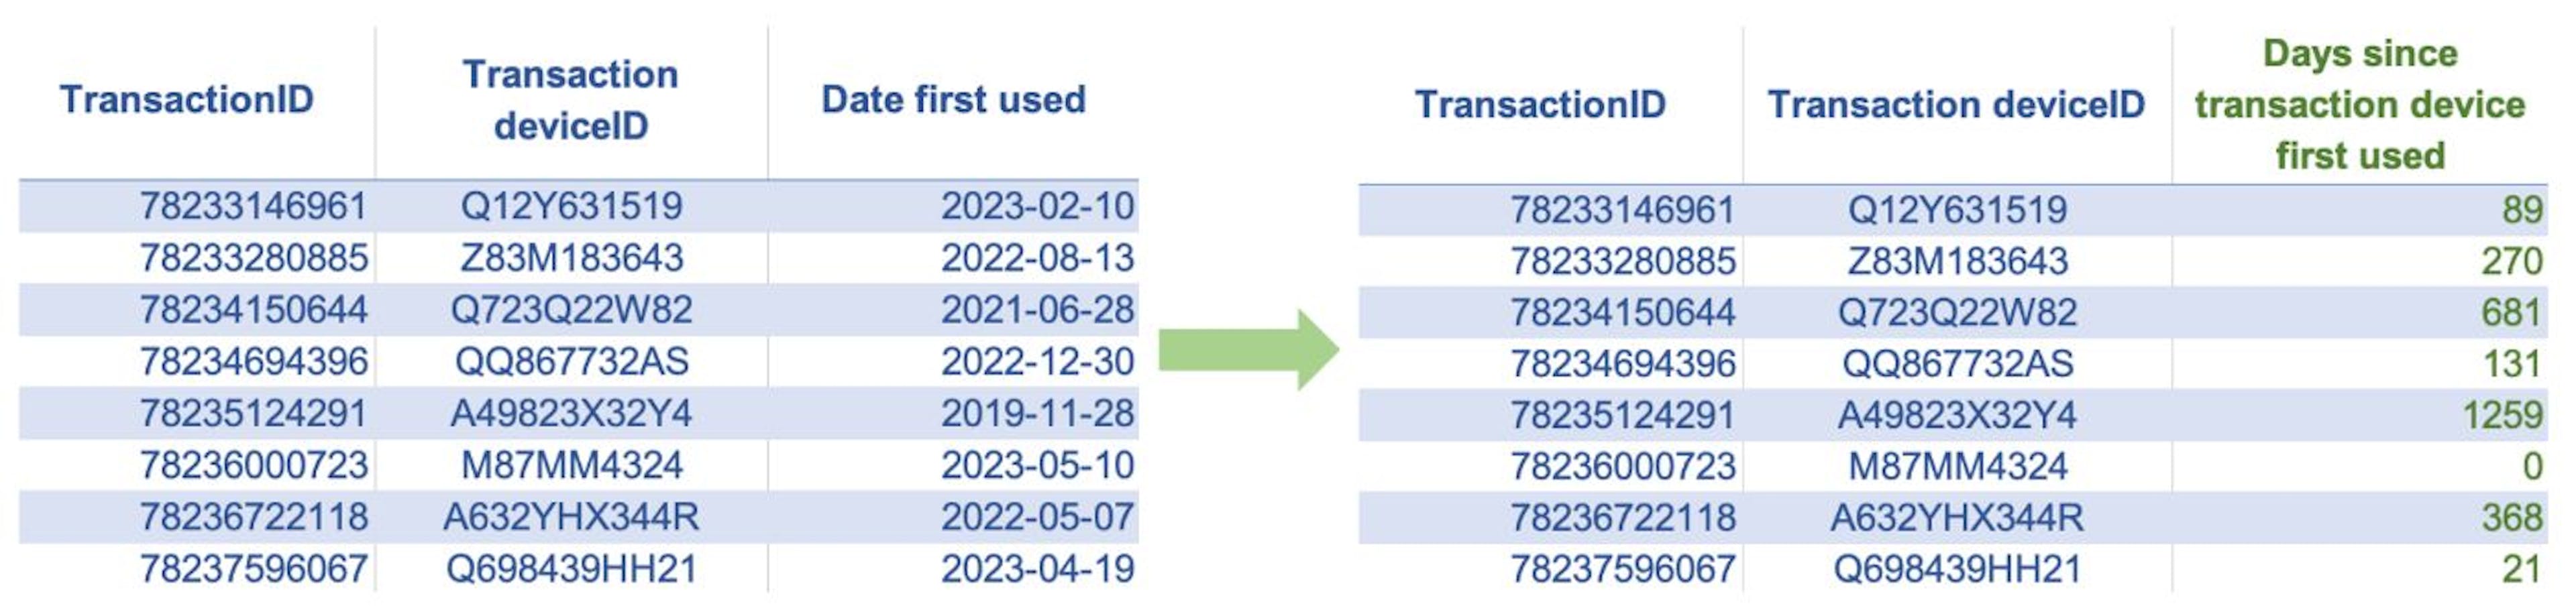 Die obigen Tabellen zeigen ein Beispiel für die Alterskodierung. Hier haben wir ein neues numerisches Feature „Tage seit der ersten Nutzung des Transaktionsgeräts“ als Differenz in Tagen zwischen dem Datum der ersten Nutzung des Geräts des Kunden und dem aktuellen Transaktionsdatum erstellt.